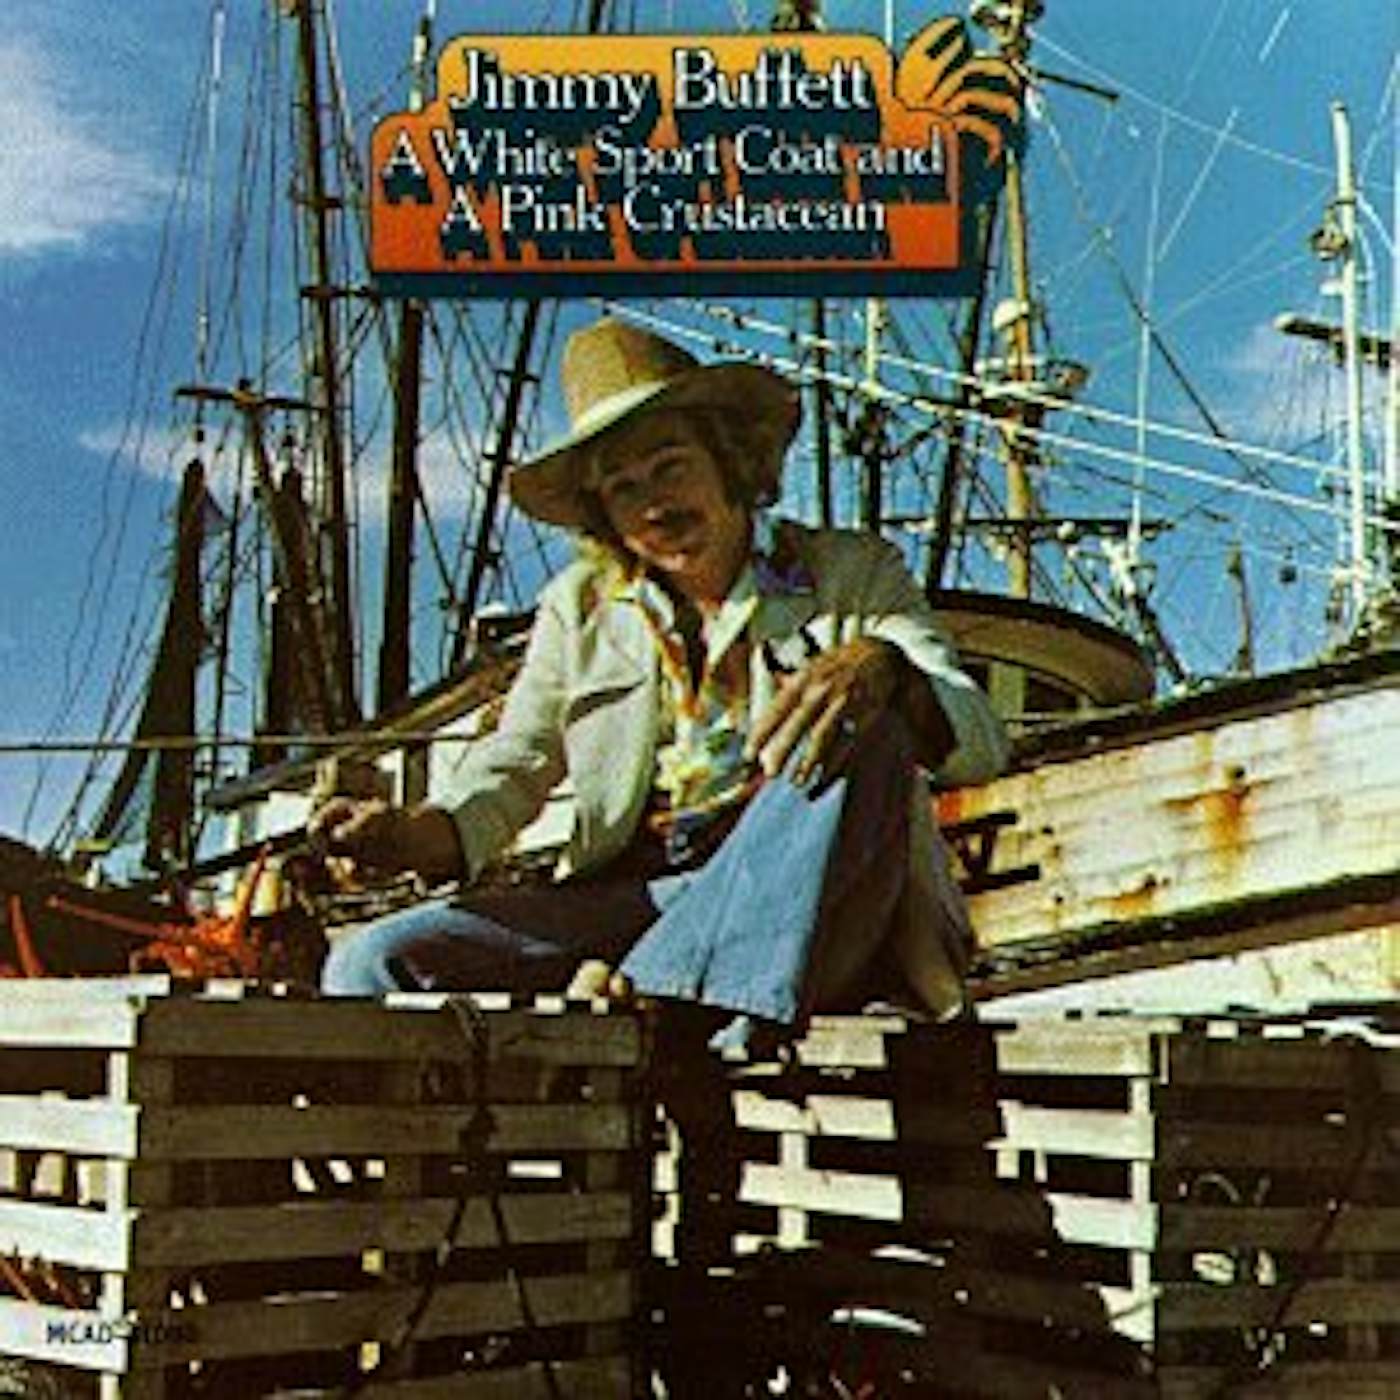 Jimmy Buffett WHITE SPORT COAT & PINK CRUSTACEAN CD